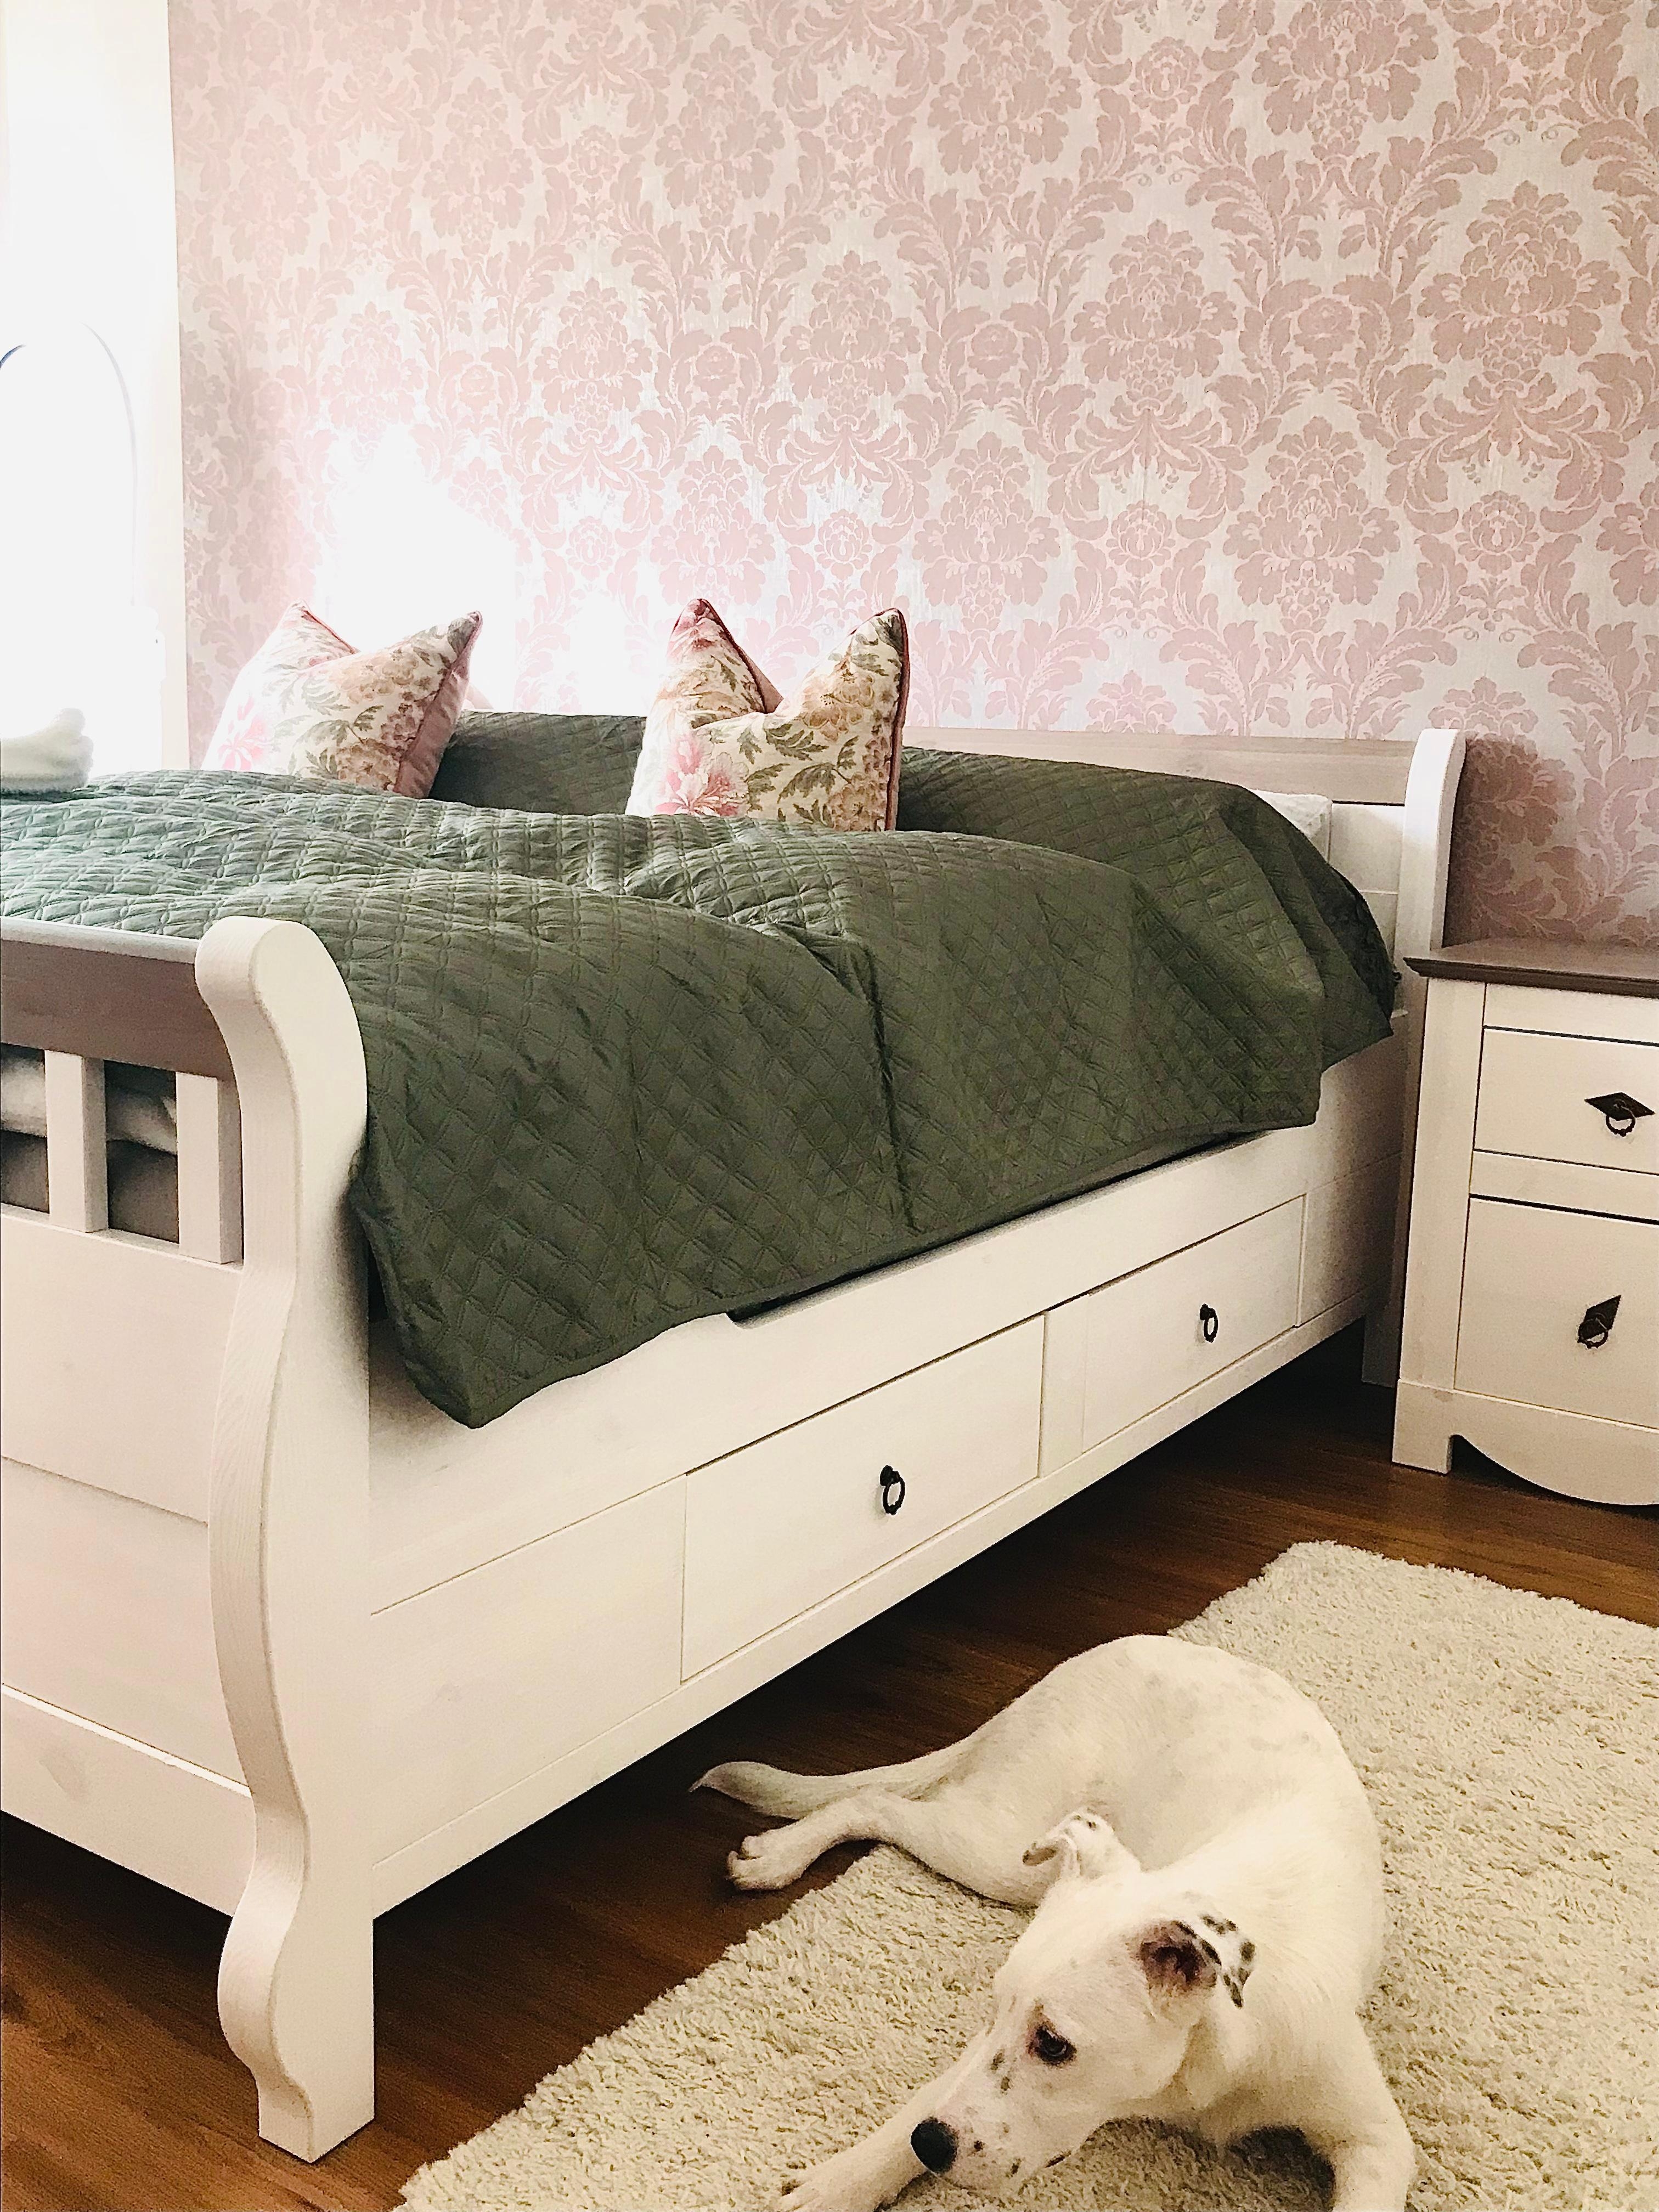 Ein Raum zum träumen 🛌 
#bedroom #mirgefällts #happyhome #dog #white #bett #tagesdecke #kissen #holzbett #nachttisch 